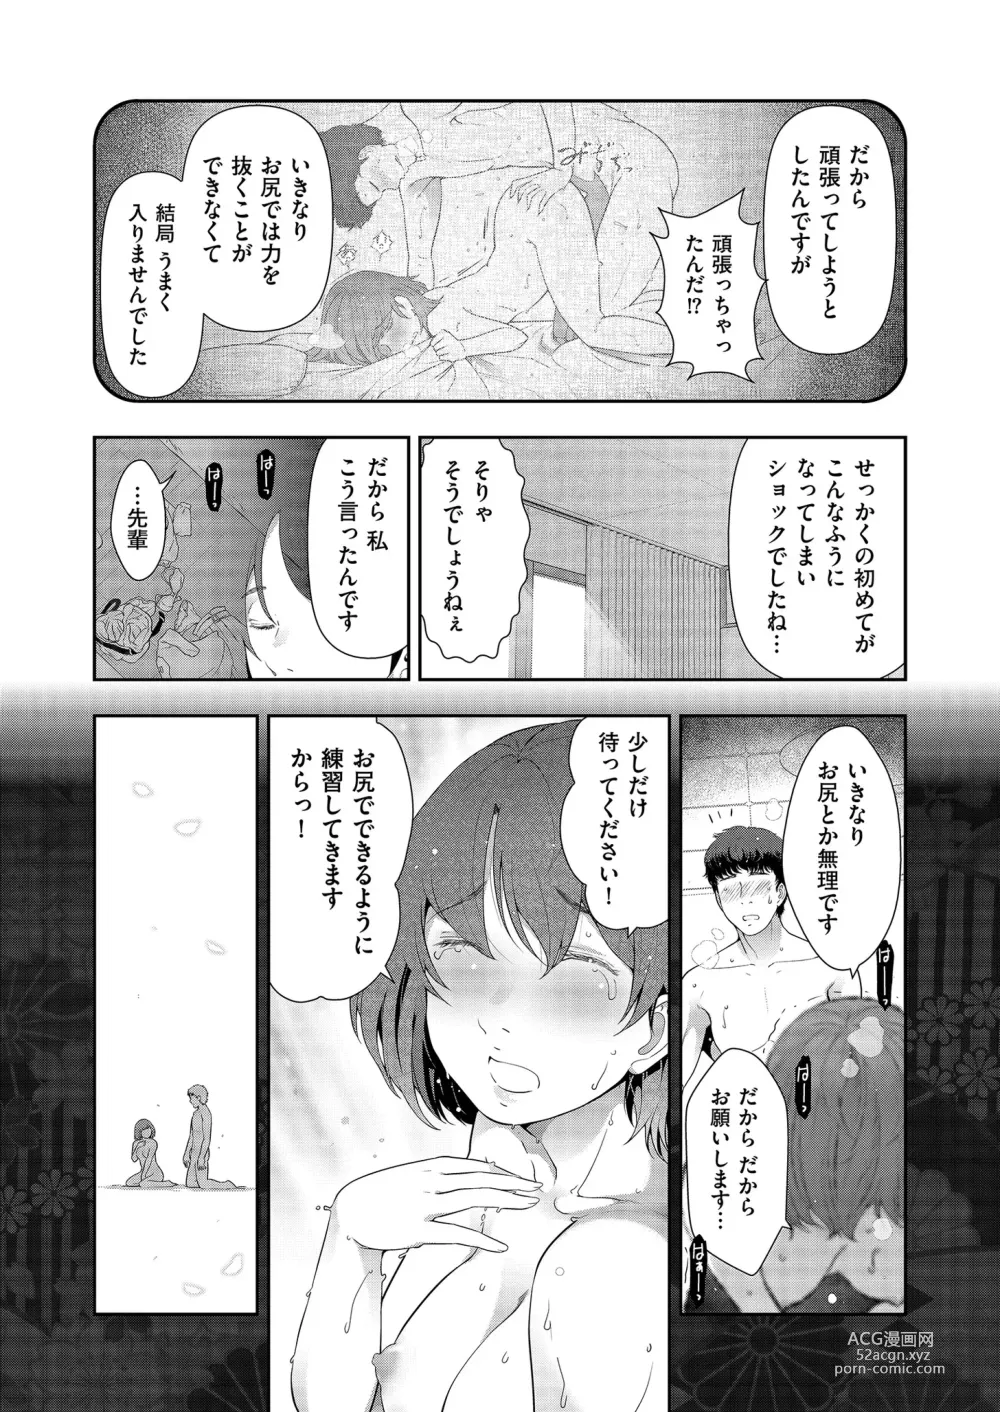 Page 151 of manga Yonimo Kanbi na Toshi Densetsu BF